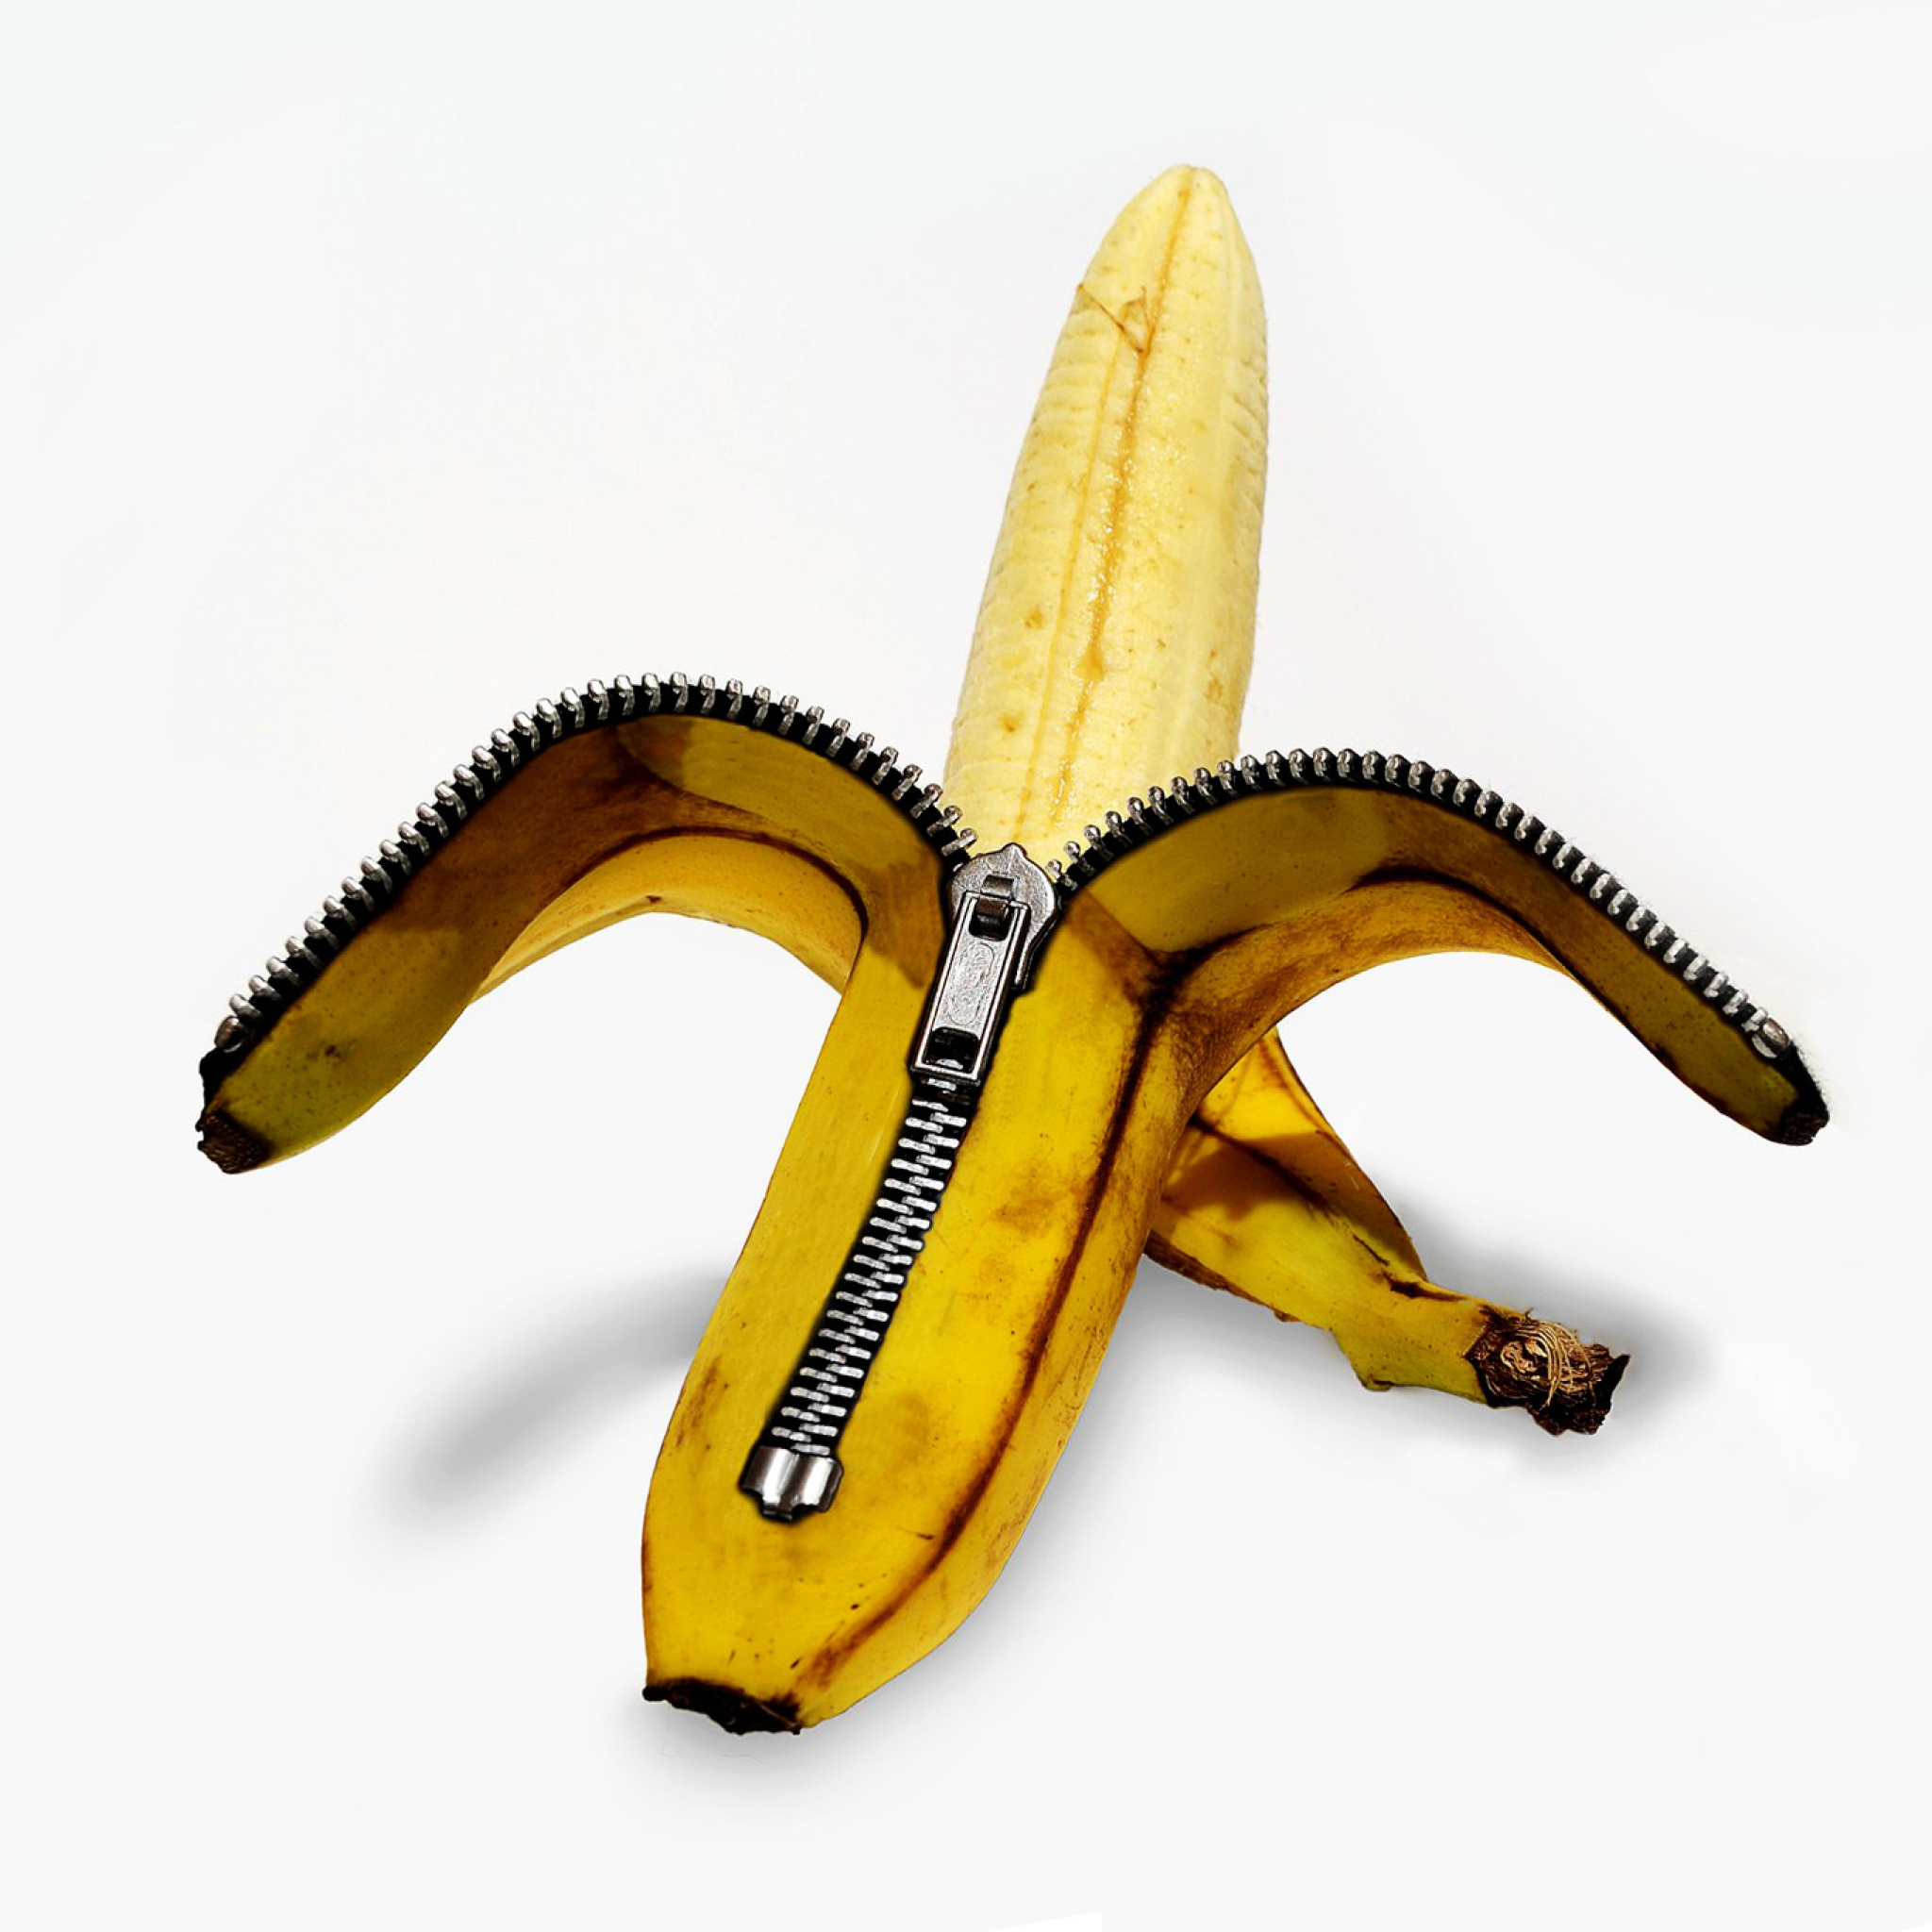 Funny banana as zipper screenshot #1 2048x2048